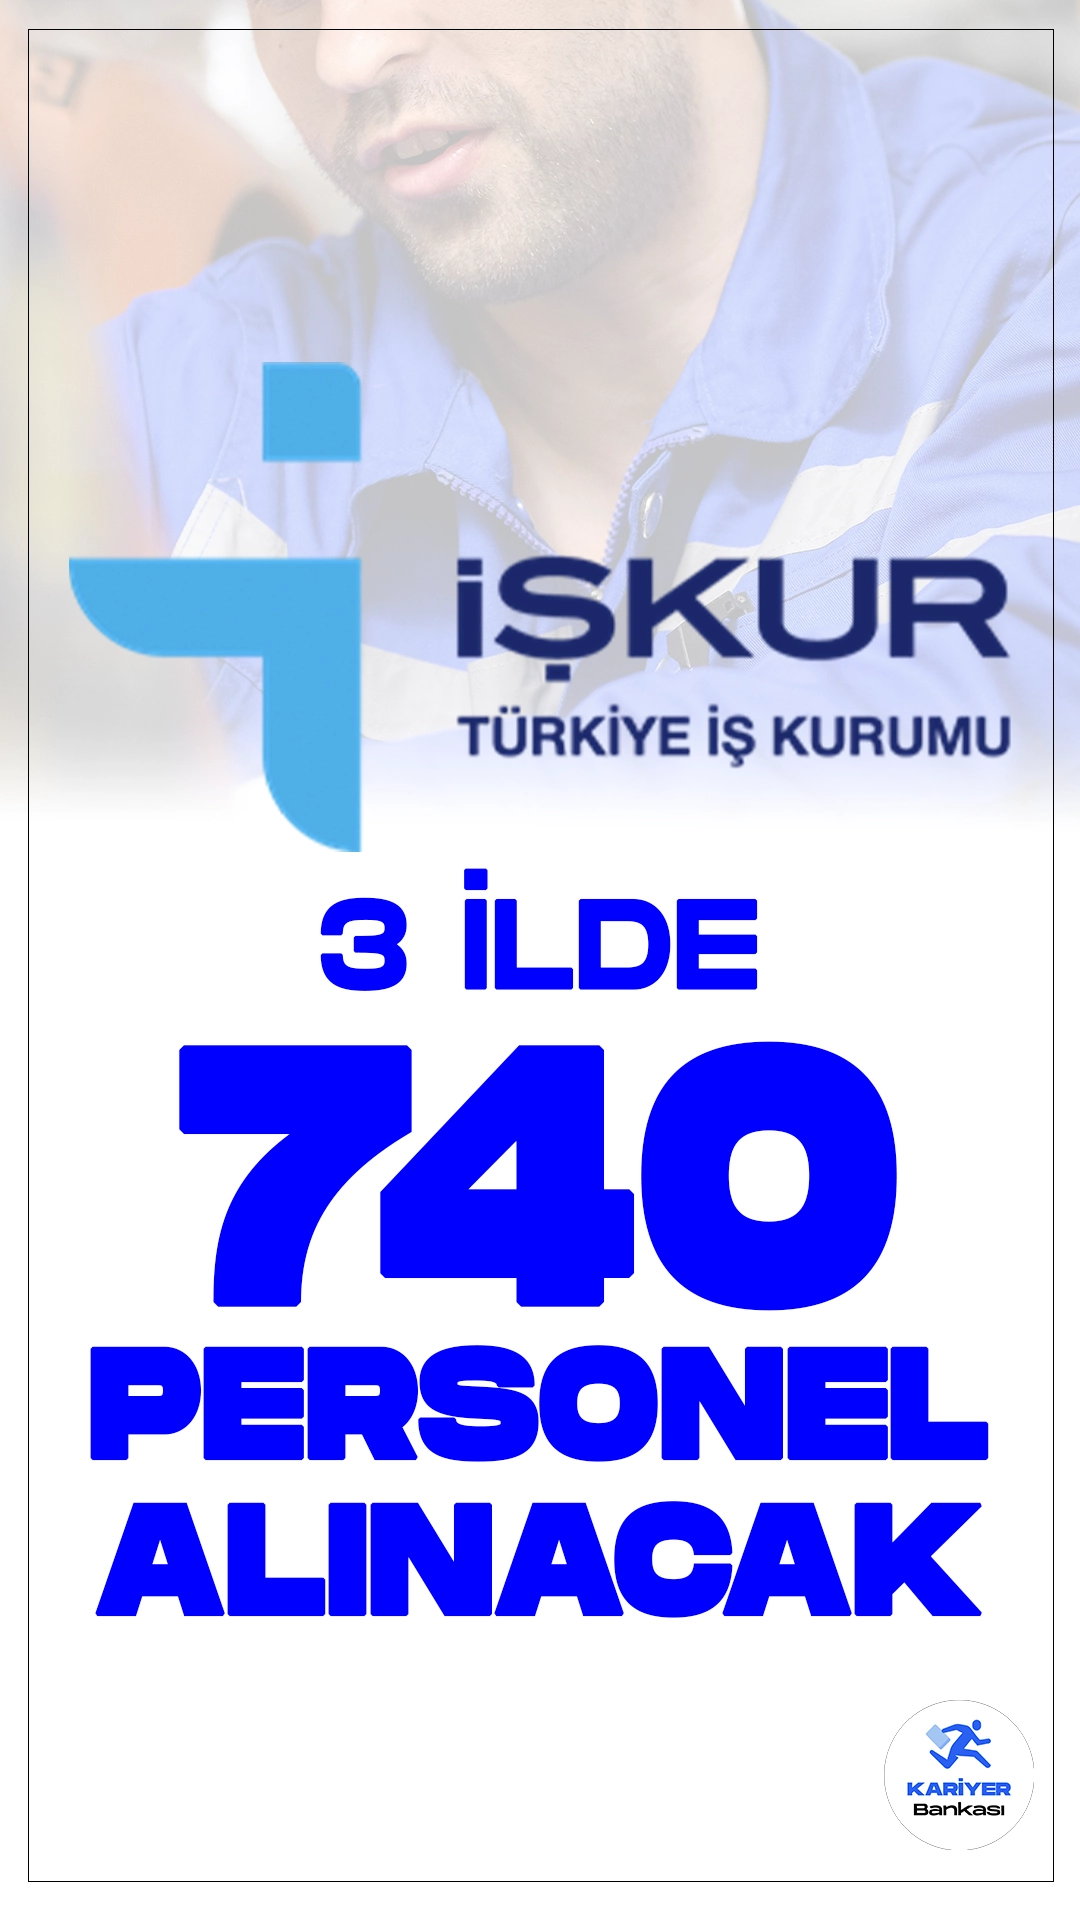 3 İlde TYP Kapsamında 740 Personel Alımı Yapılacak.Türkiye İş Kurumu (İŞKUR) üzerinden yayımlanan duyurularda, kaymakamlık ve valiliklere 3 ilde olmak üzere 740 personel alımı yapılacağı aktarıldı. Toplum Yararına Programlar(TYP) kapsamında gerçekleşecek olan personel alımına başvuru yapacak adayların, belirtilen şartları dikkatle incelemesi gerekmektedir.